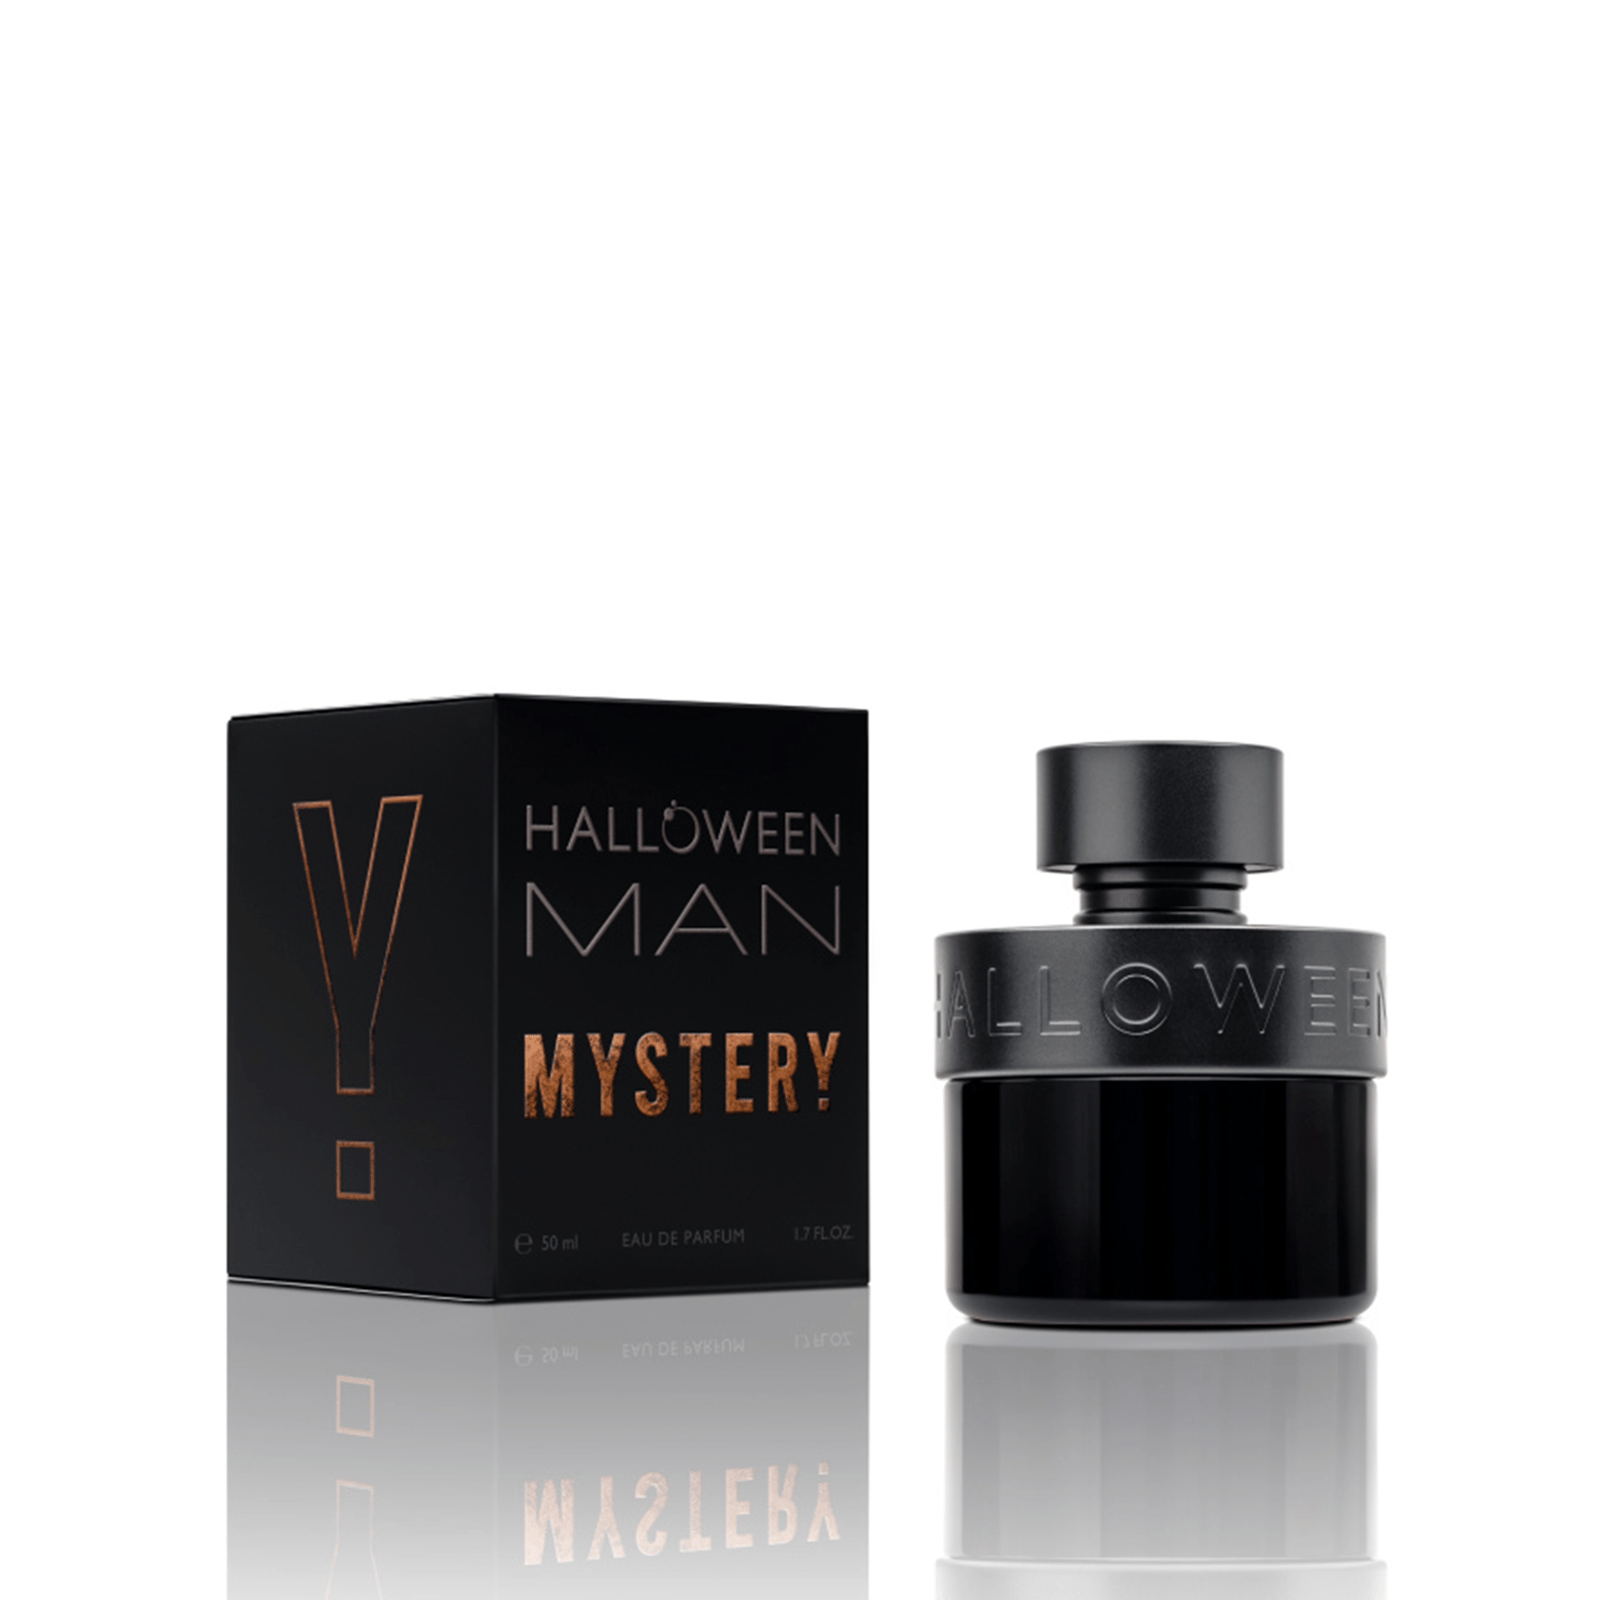 Halloween Man Mystery Eau de Parfum 50ml